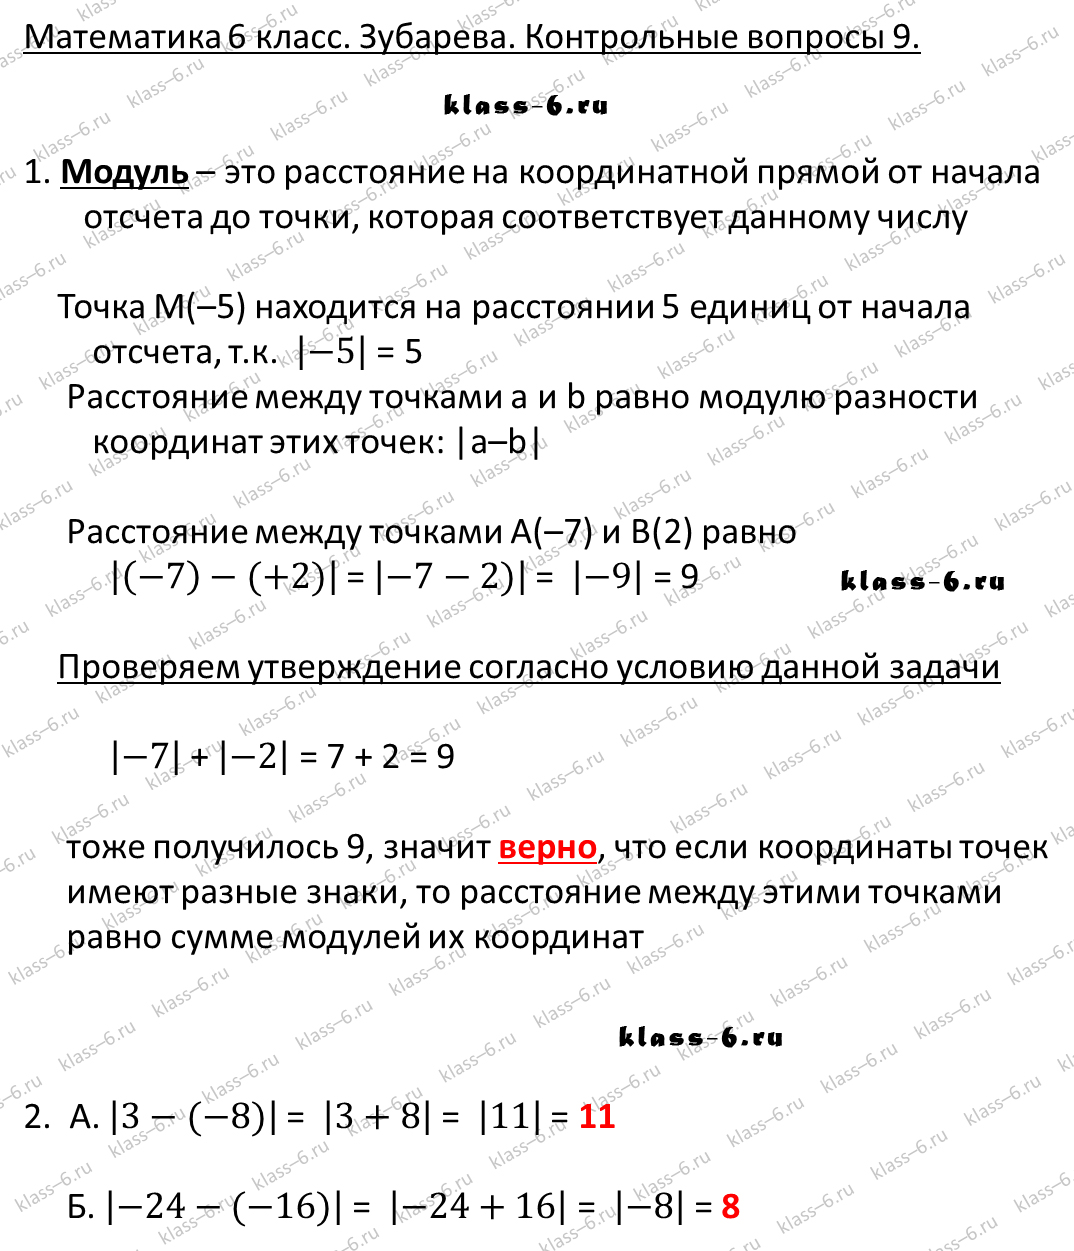 гдз математика Зубарева 6 класс ответ и подробное решение с объяснениями контрольных вопросов к параграфу № 9